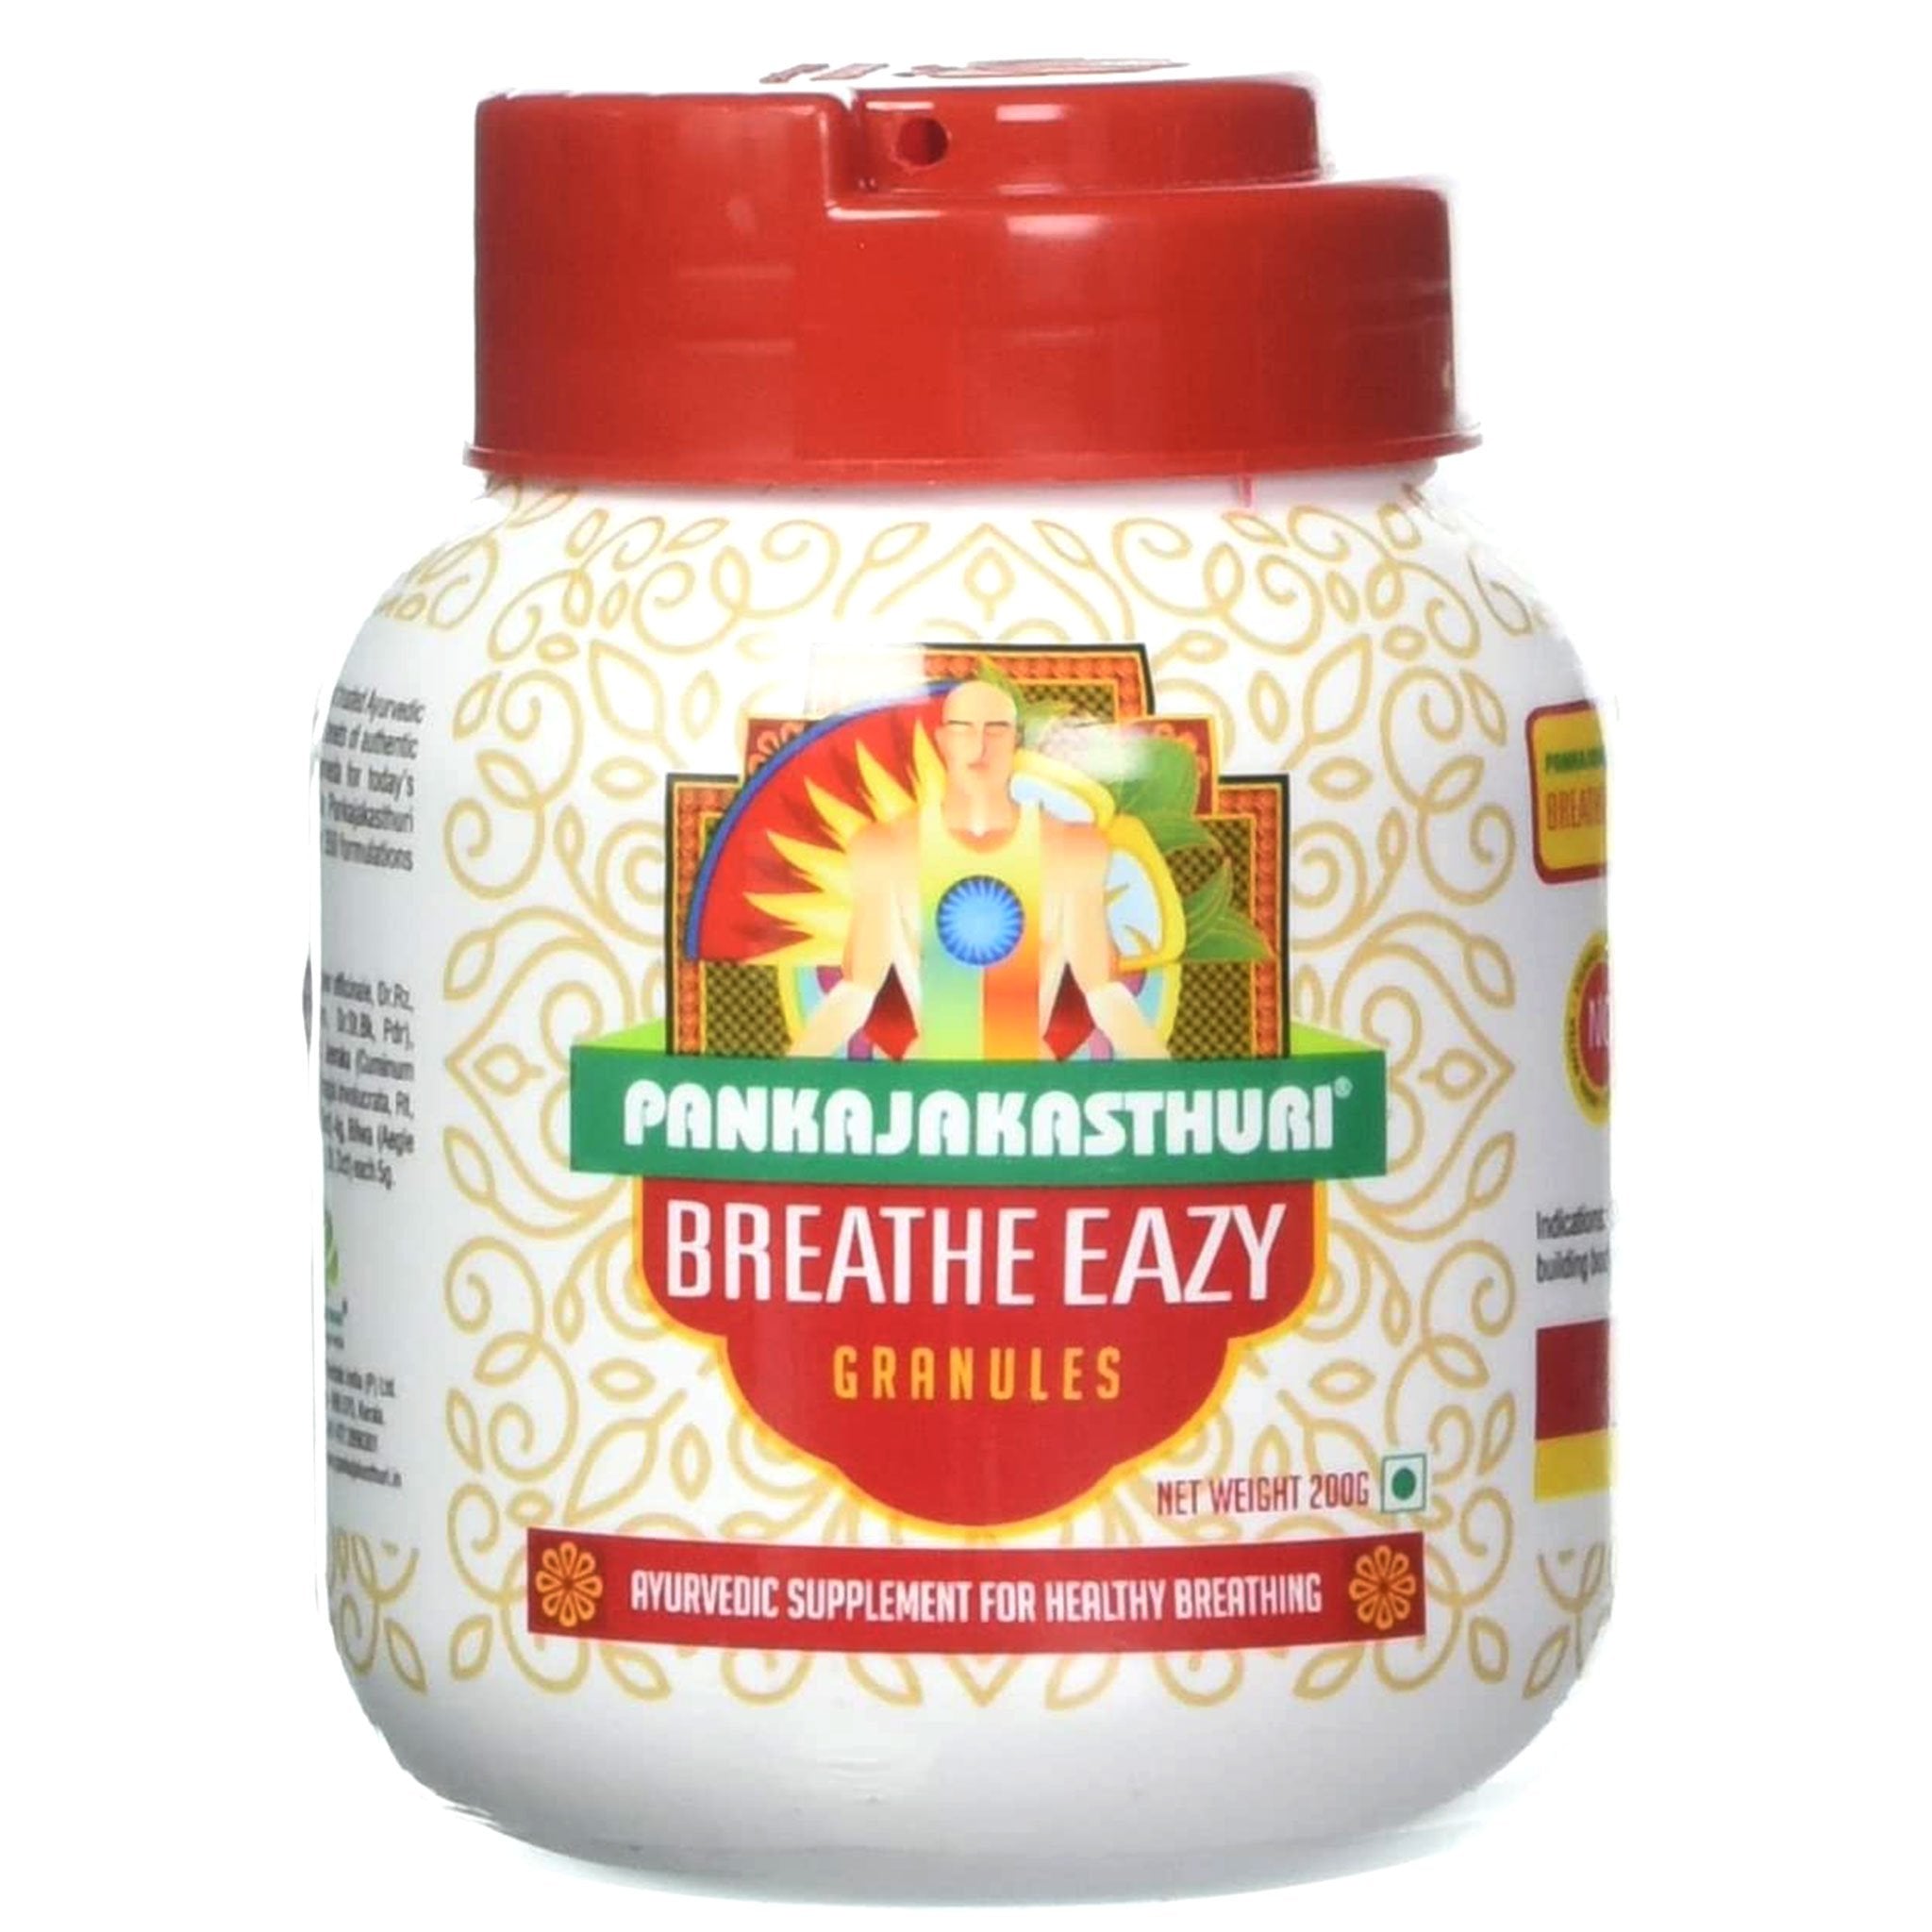 Pankajakasthuri Breath Easy Granules 400ml  Ayurvedic Supplement for Breathing